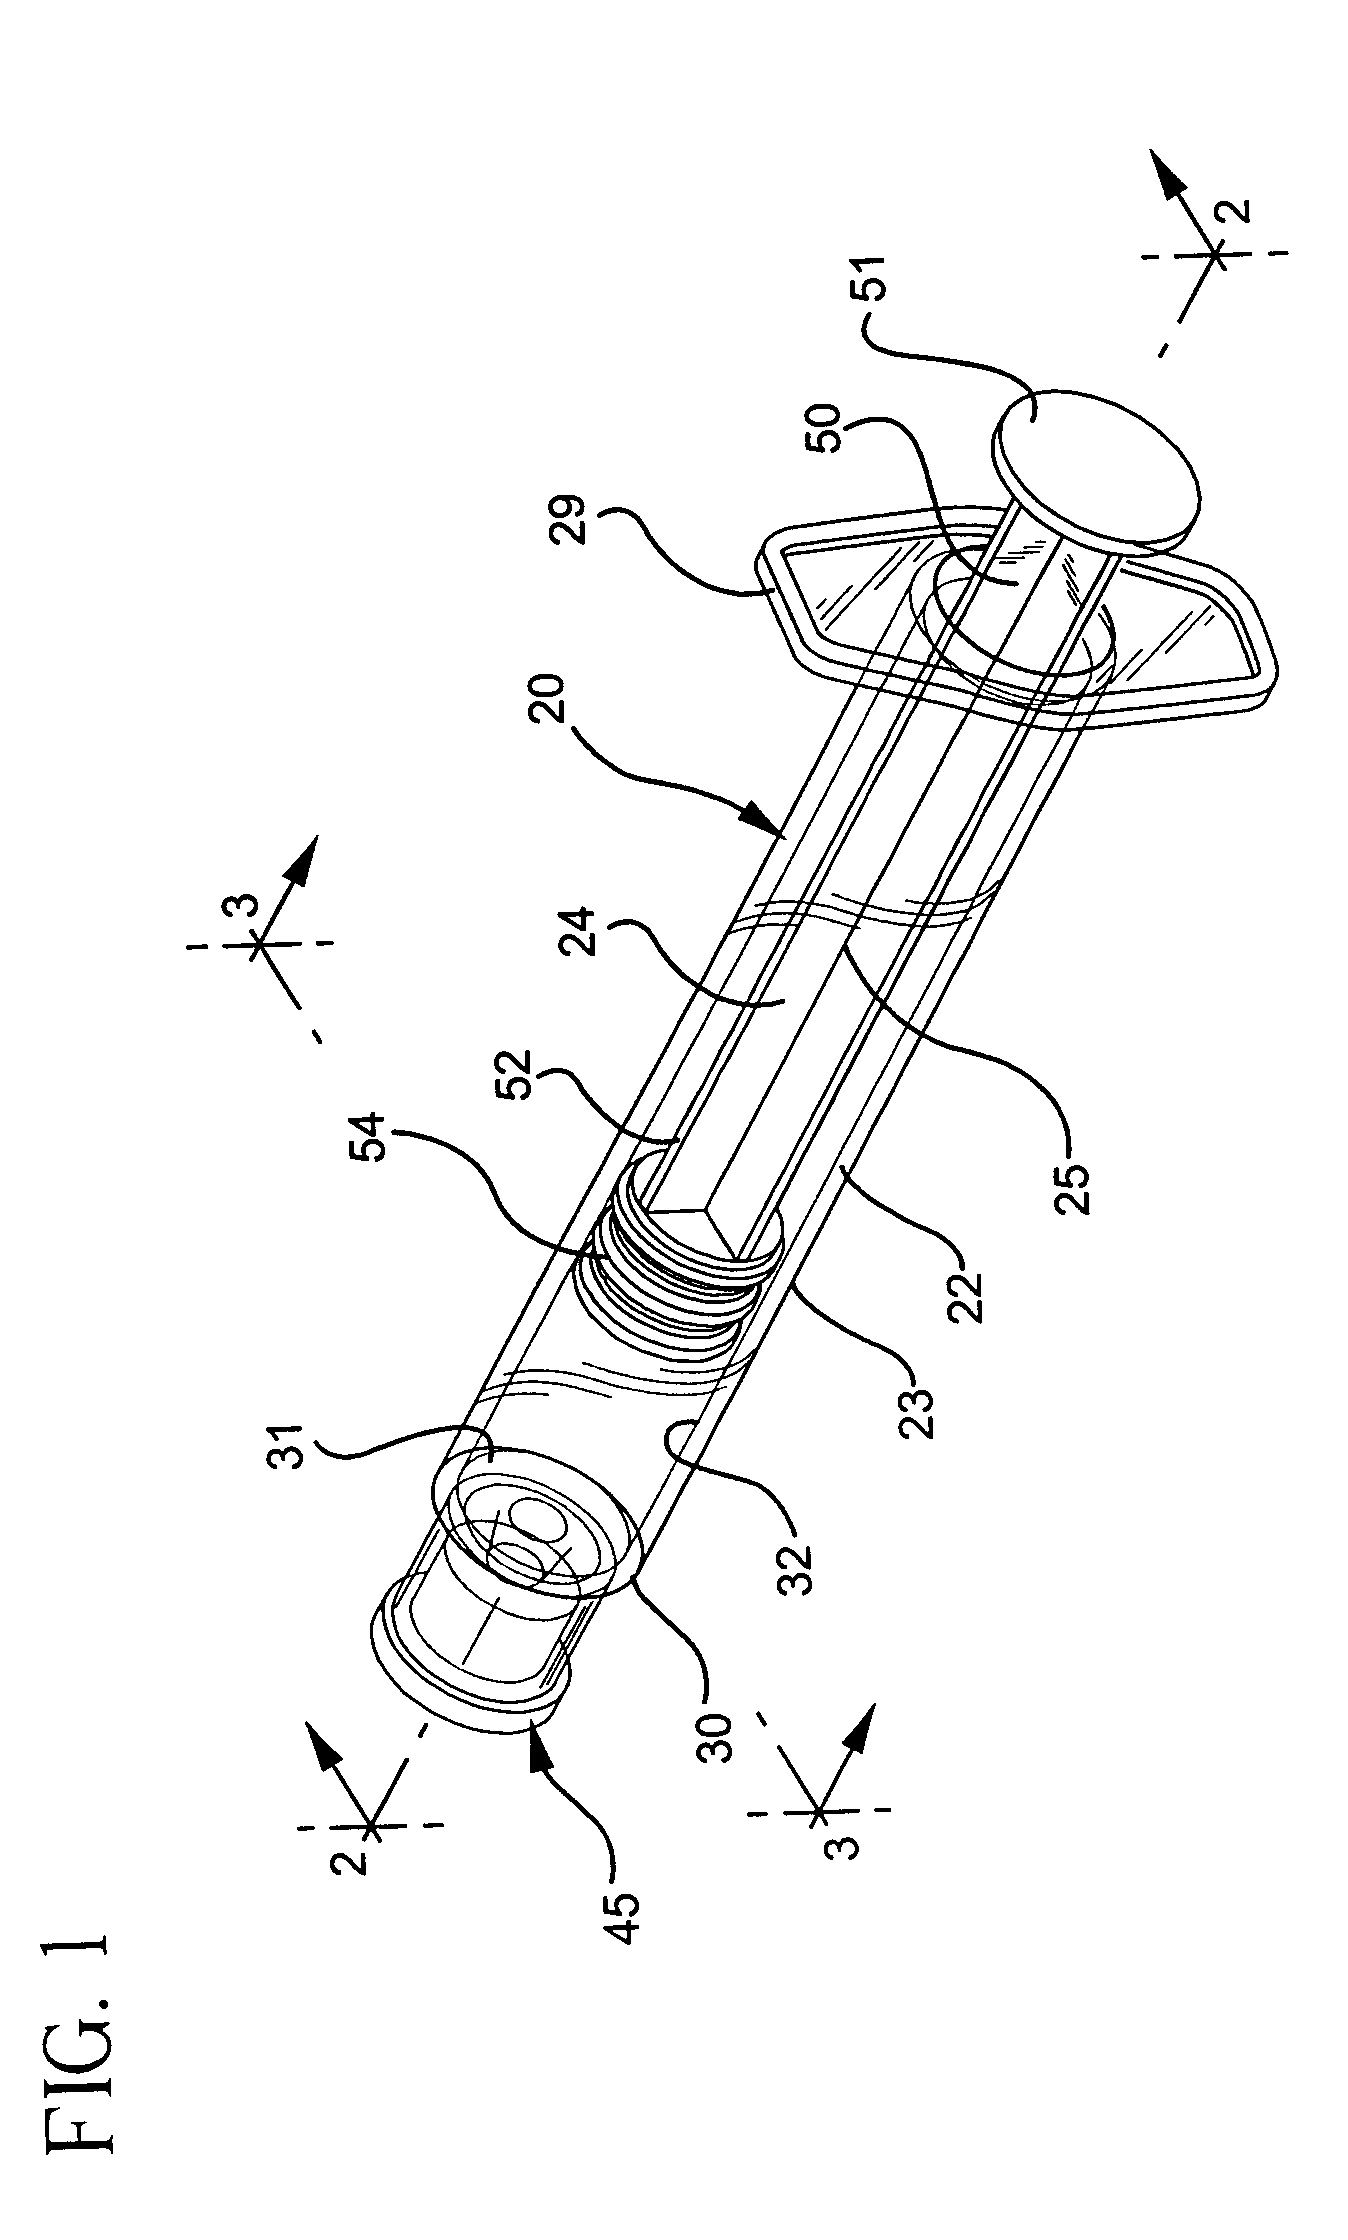 Flush syringe having anti-reflux stopper